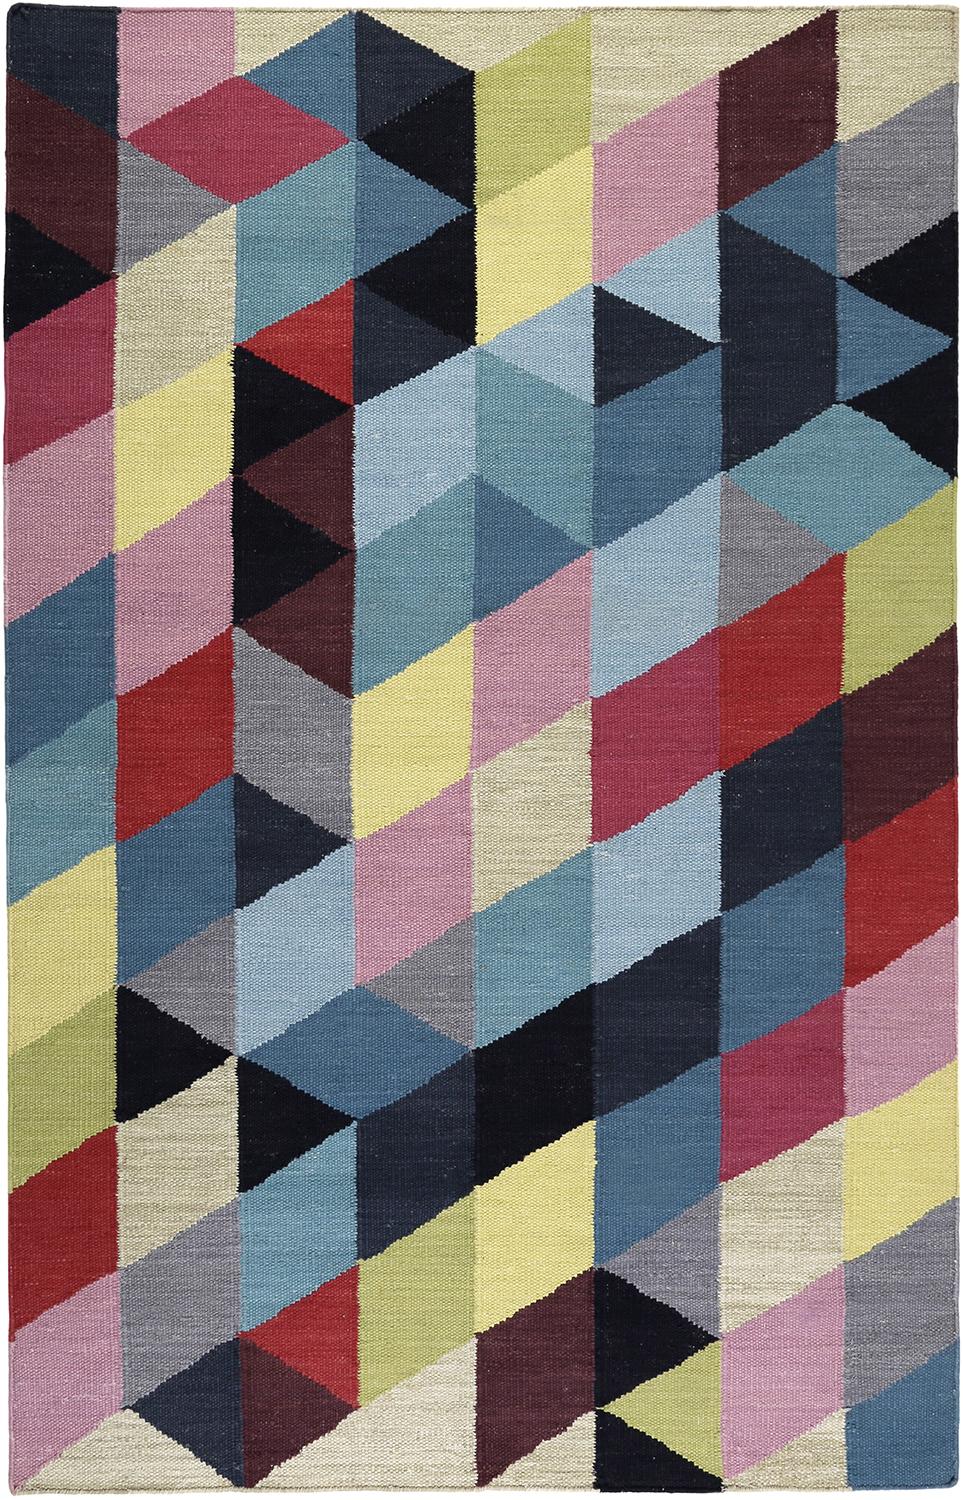 Handwebteppich Bunt Baumwolle Rainbow Kelim 130x190 cm - Multicolor, KONVENTIONELL, Textil (130/190cm) - Esprit